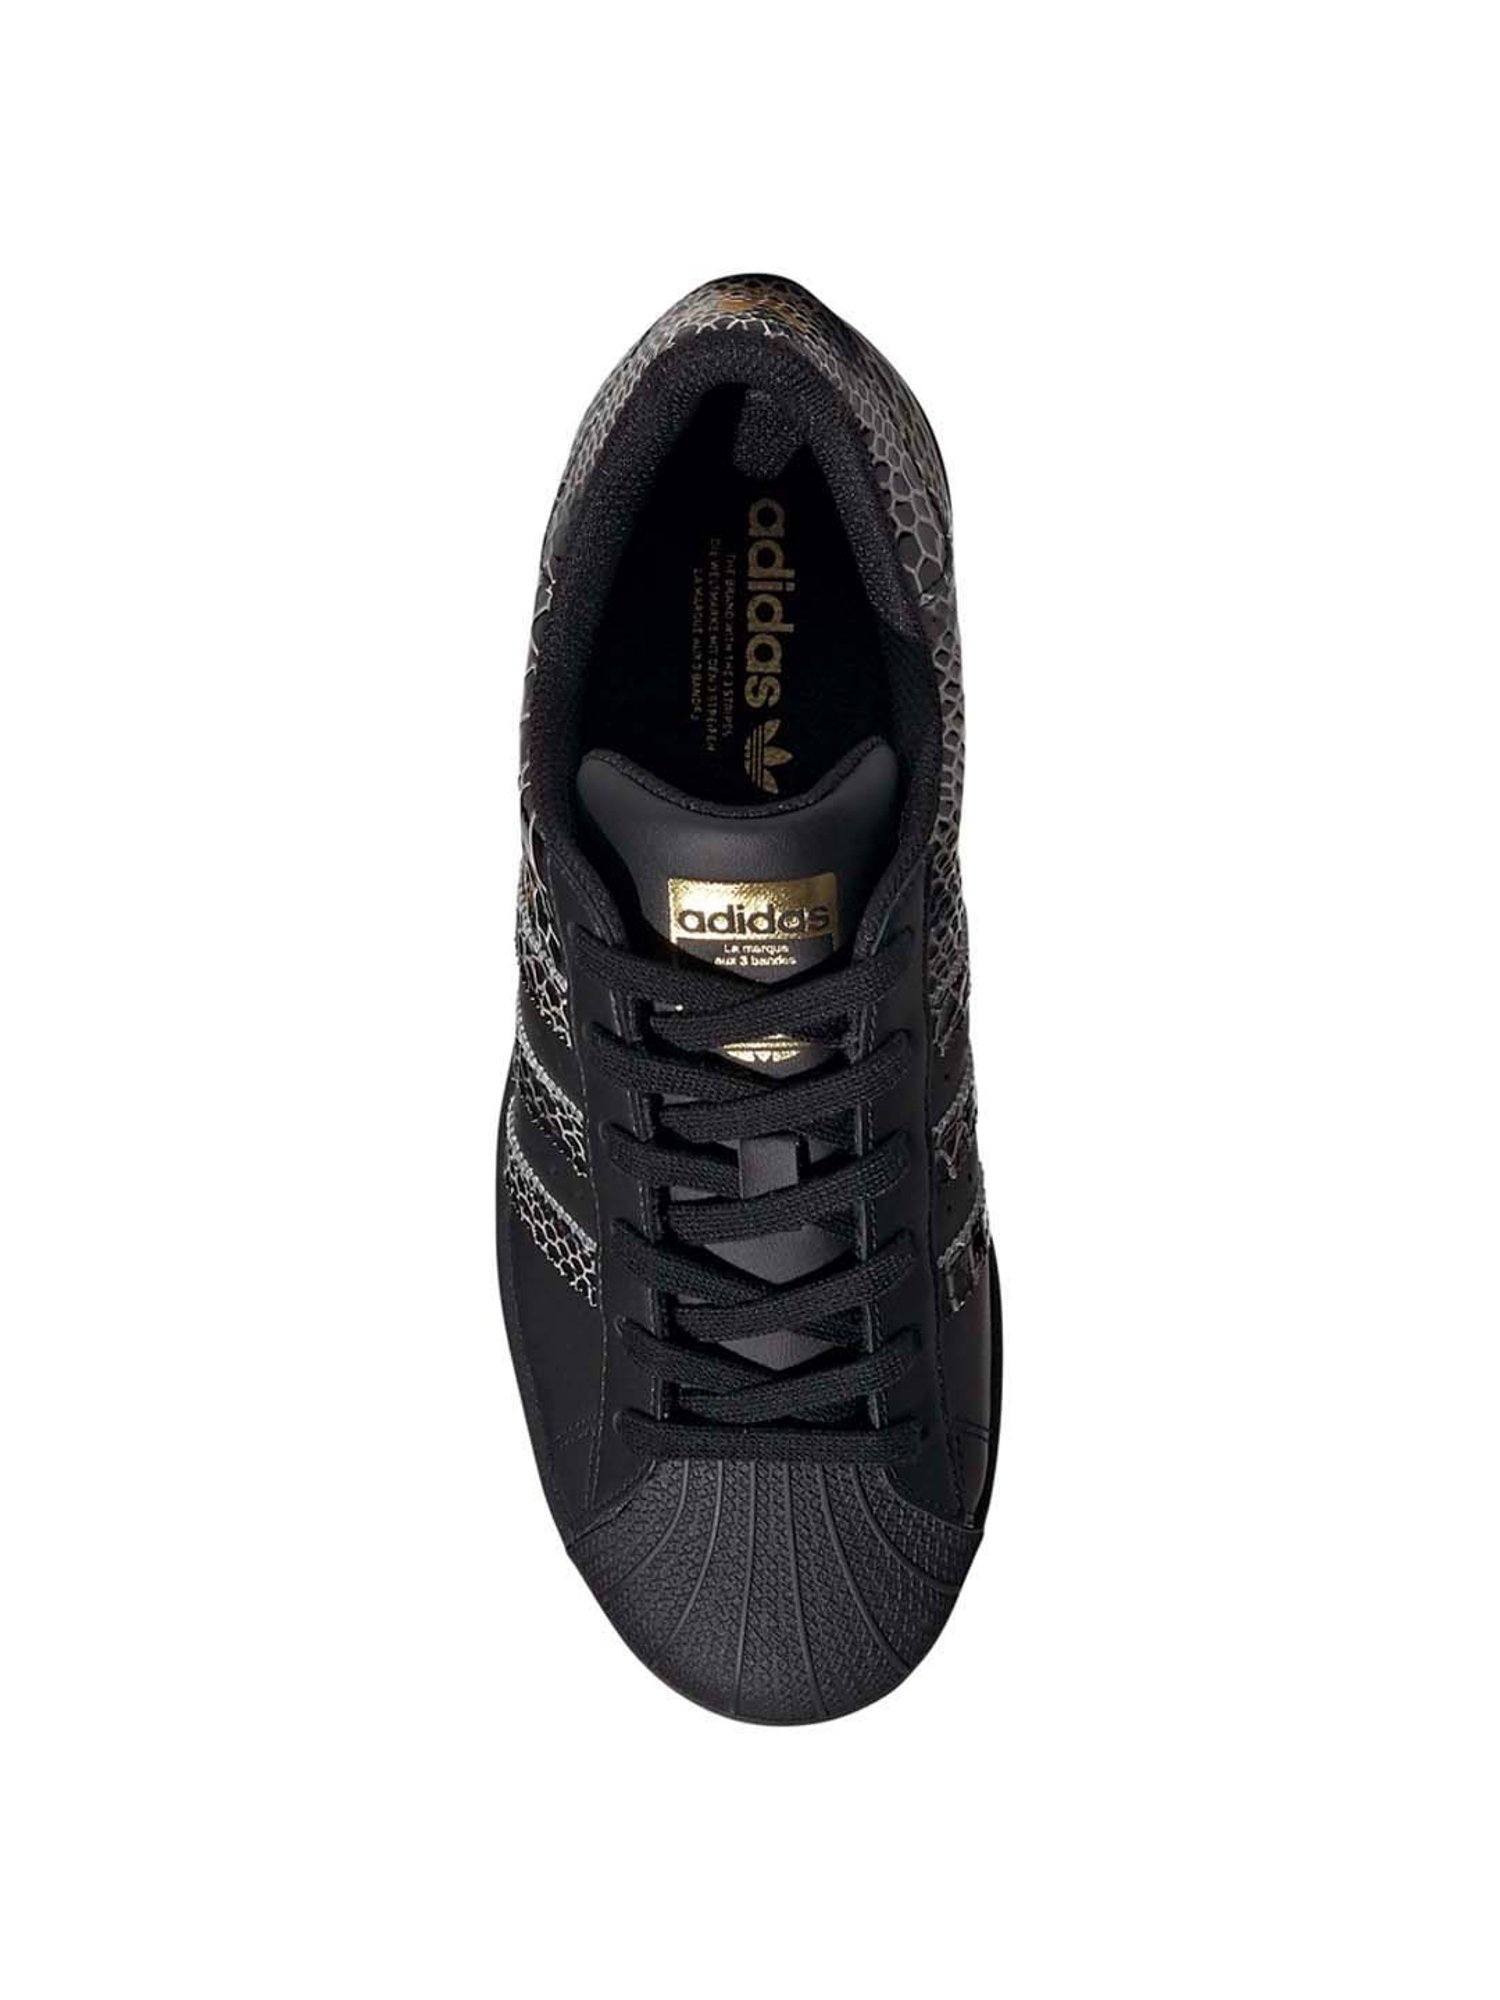 adidas Originals sneakers Superstar black color